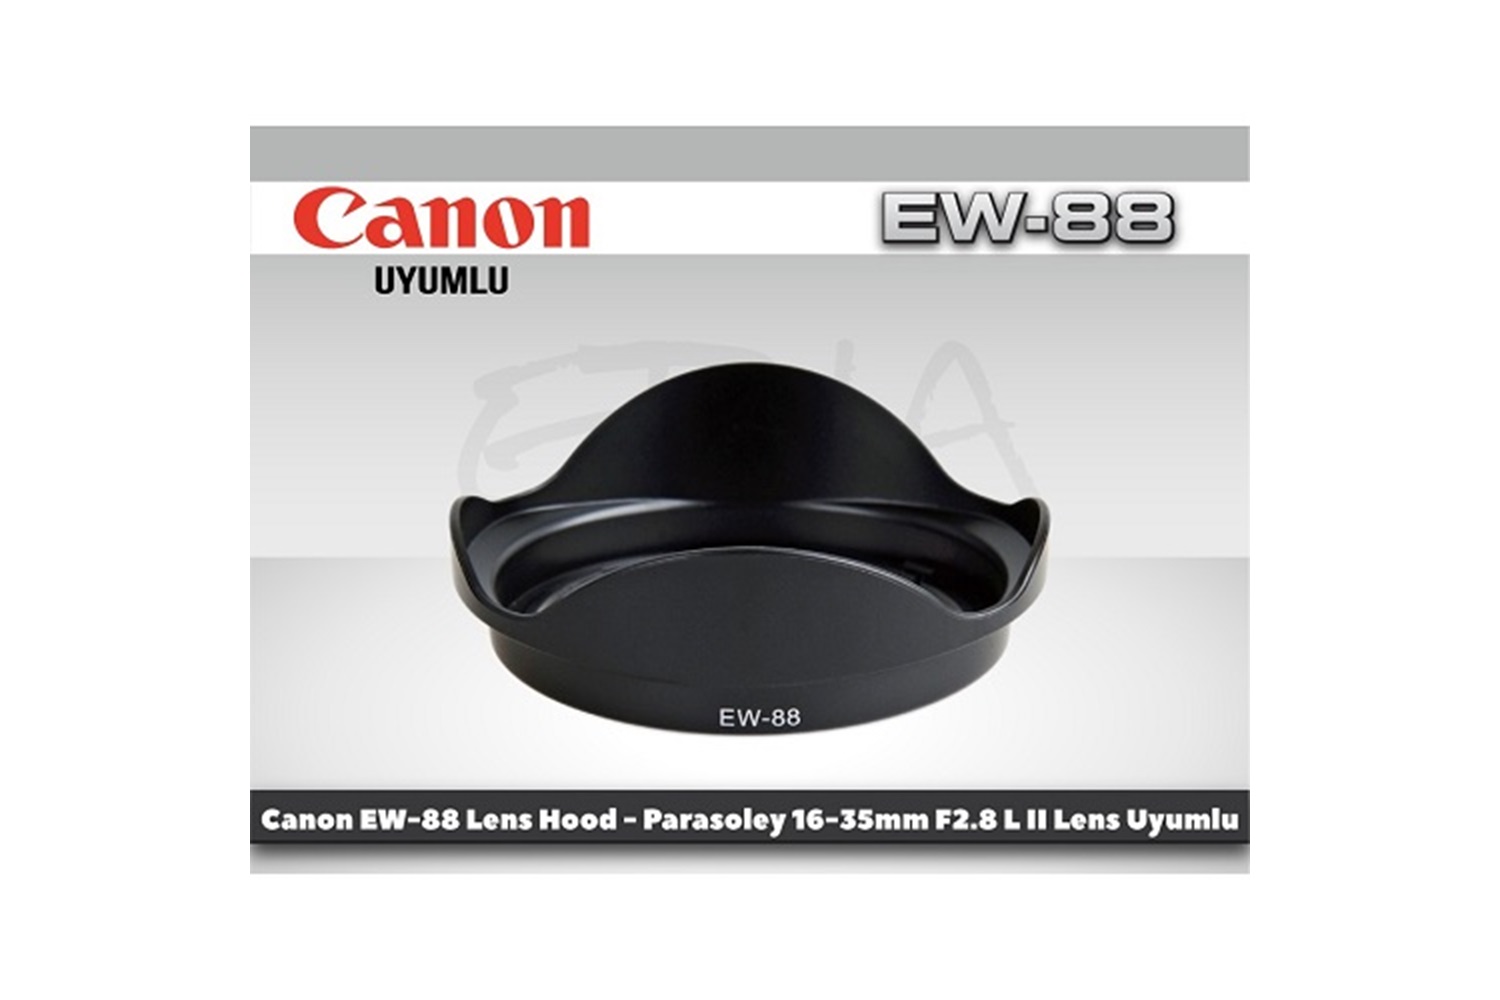 Tewise Canon EW-88 Parasoley 16-35mm F2.8L II USM Lens Uyumlu